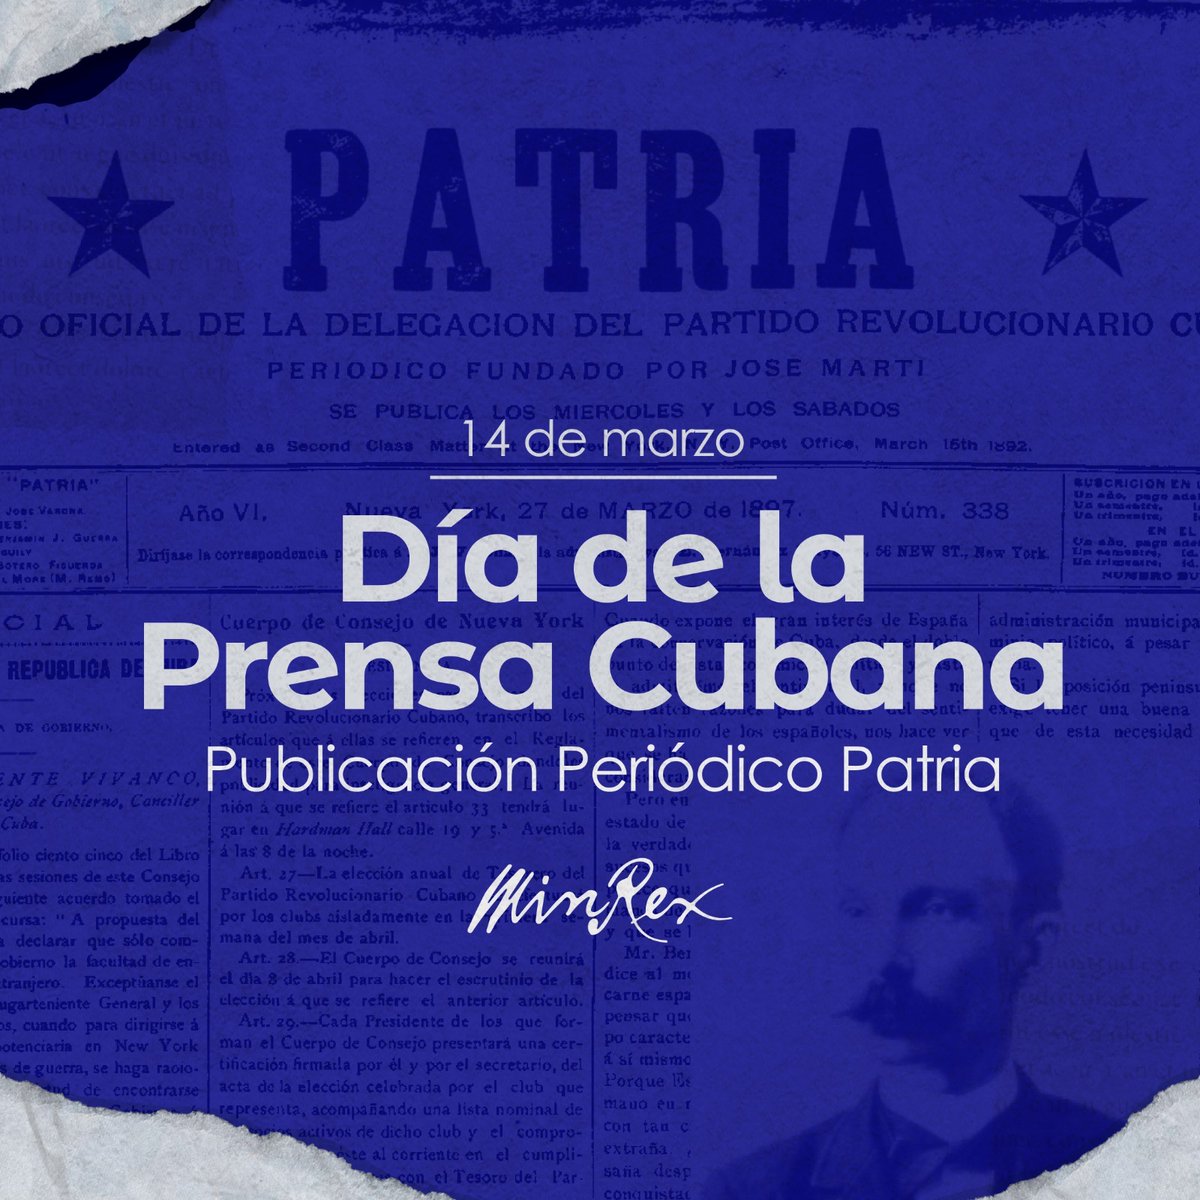 Son 132 años de creación del periódico “Patria” por José Martí. Su legado es base para un periodismo cubano digno y comprometido con la Revolución y el pueblo. Felicitamos a los periodistas y comunicadores de #Cuba en este Día de la Prensa Cubana.